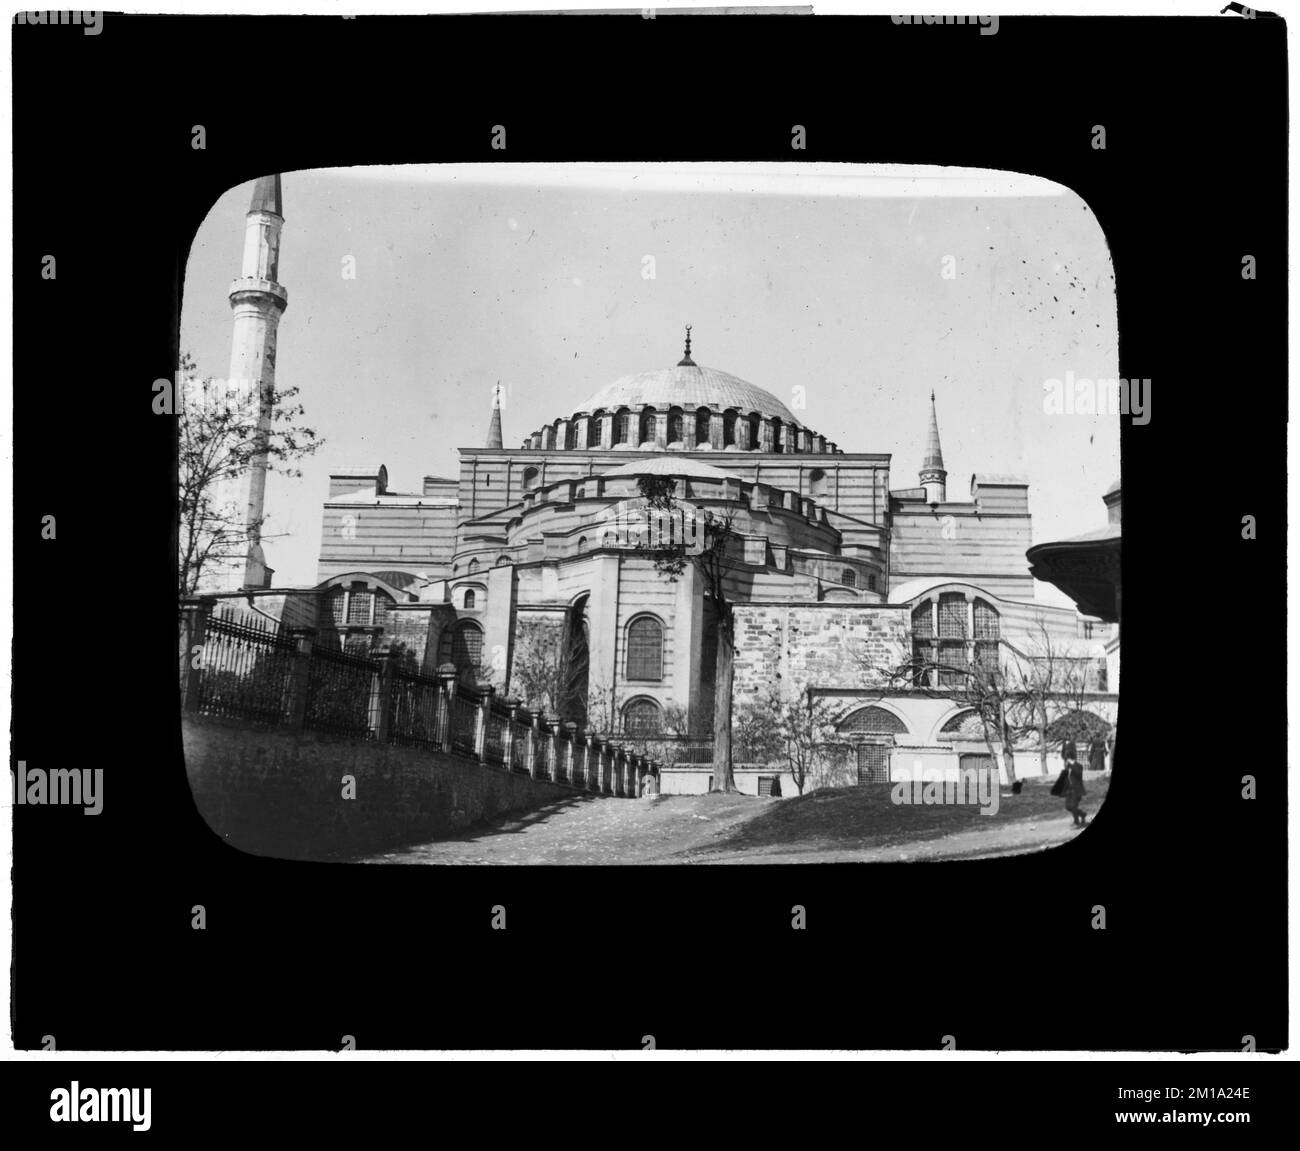 Truthahn. Konstantinopel. St. Sophia, Moscheen, Ayasofya Müzesi. Nicholas Catsimpoolas Kollektion Stockfoto